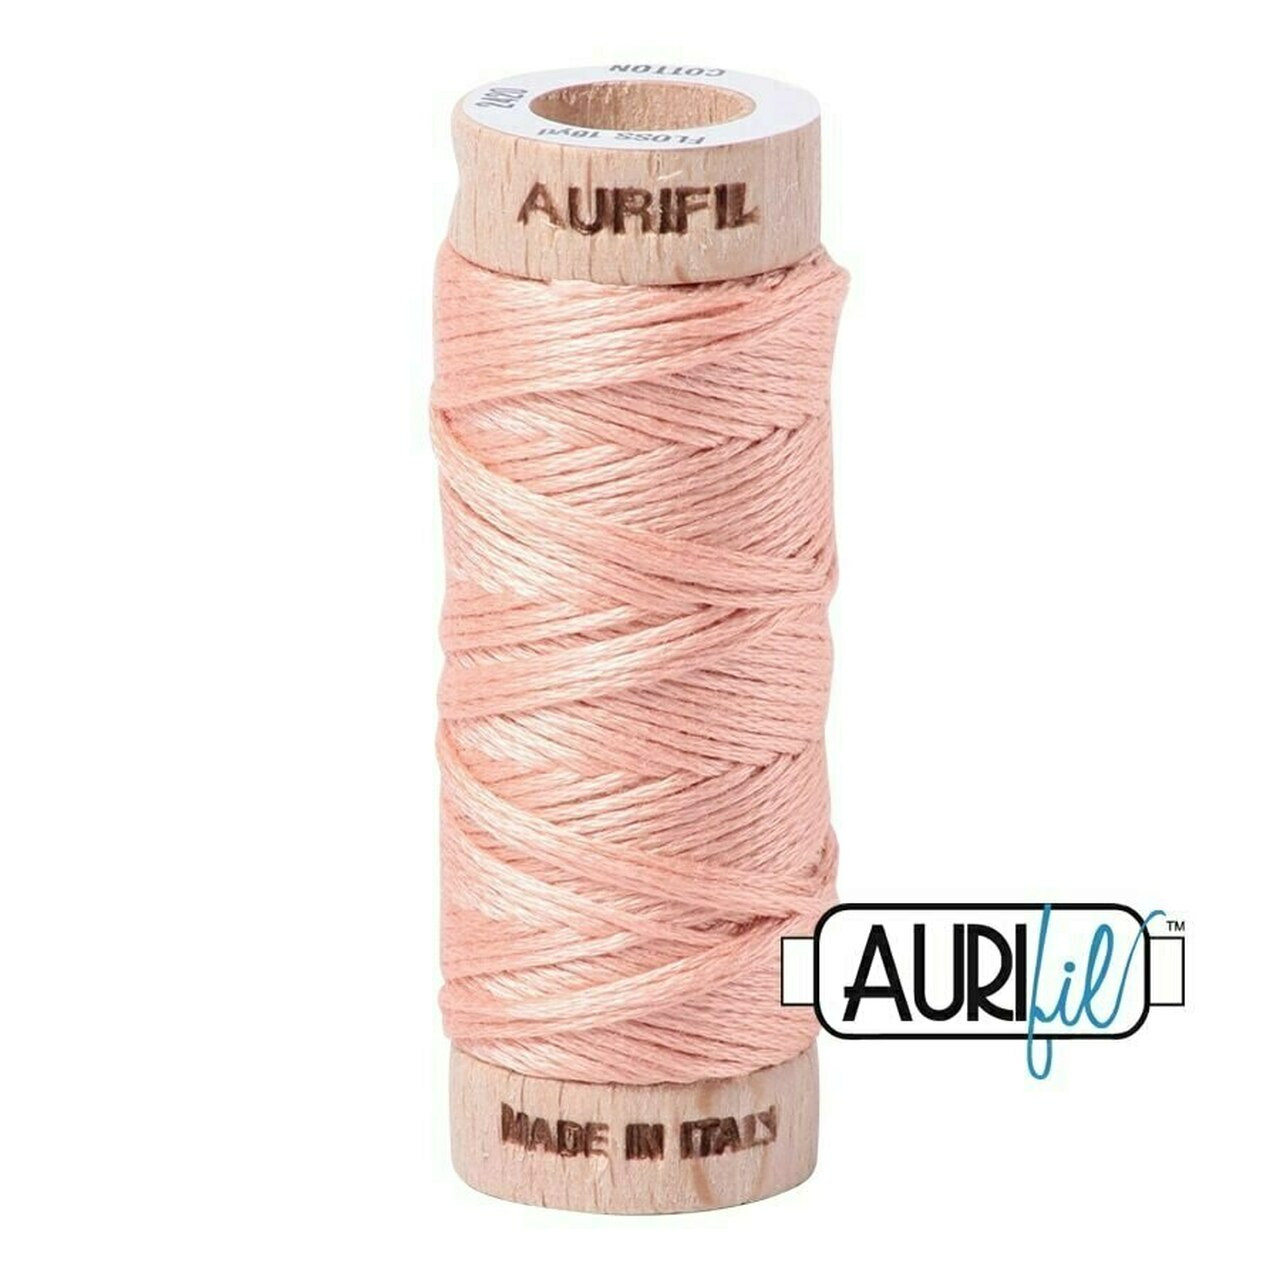 Aurifil 2420 - Light Blush